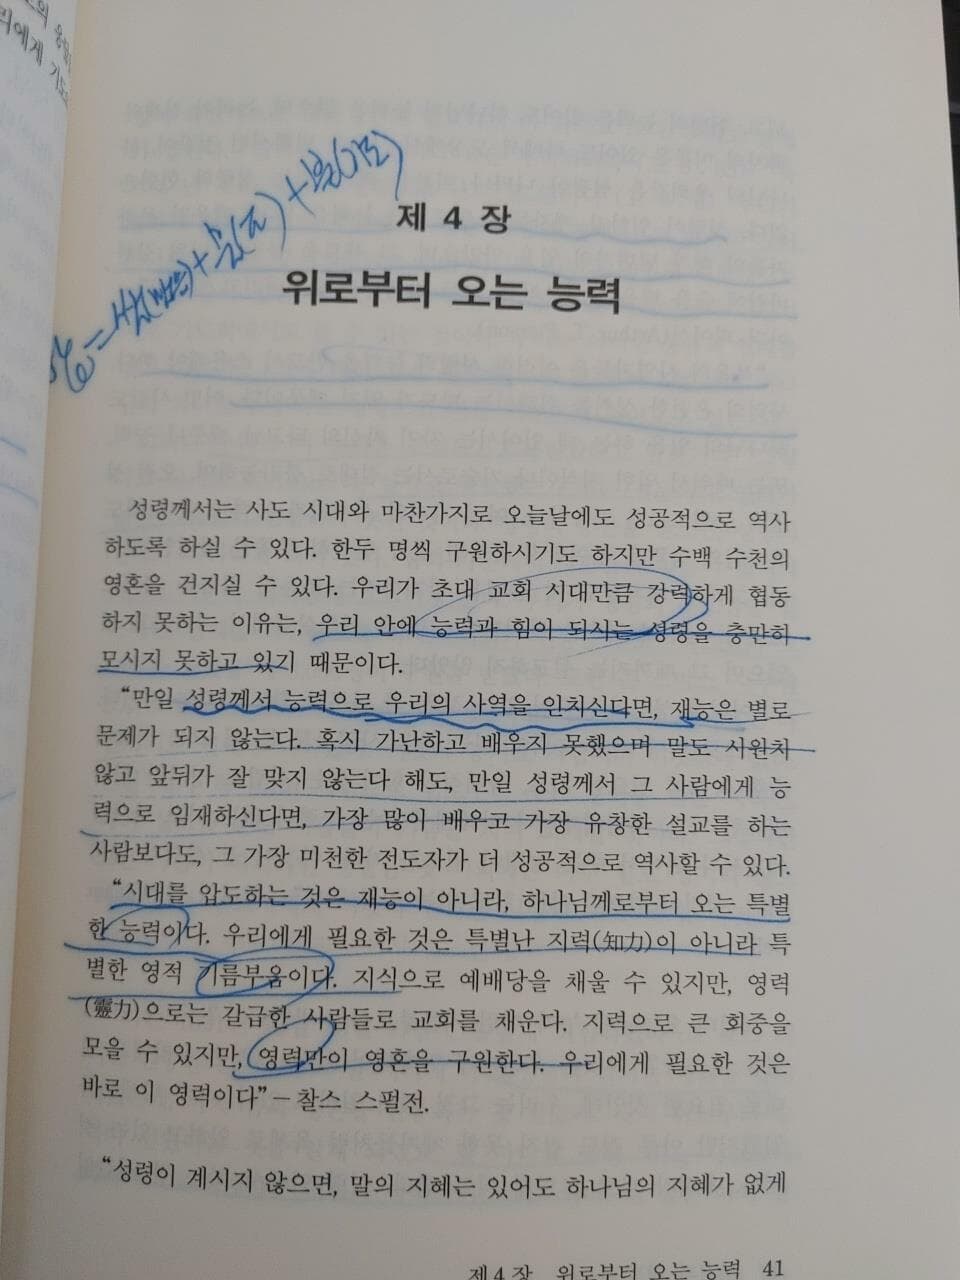 구령의 열정 | 오스왈드 스미스, 박광철 옮김, 생명의말씀사, 1993 (밑줄, 하단 책상태설명 확인해주세요)